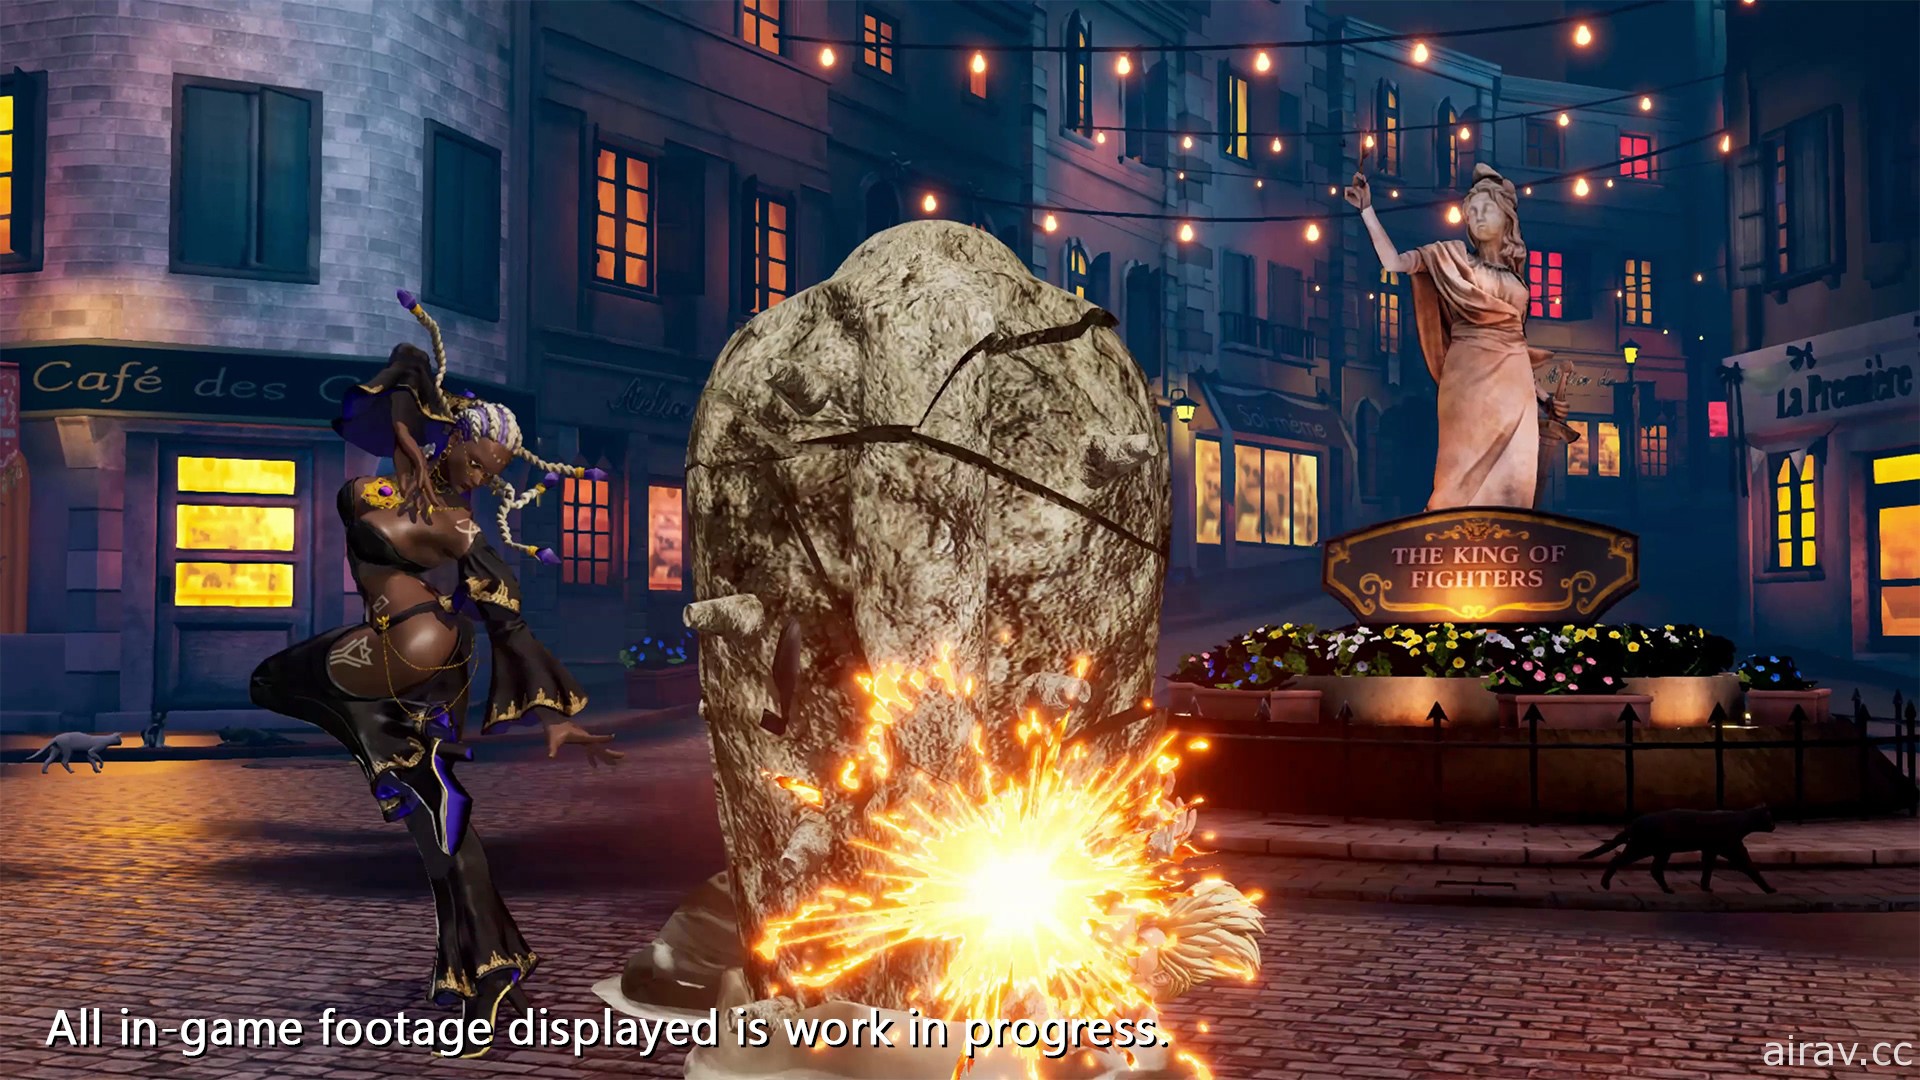 《拳皇 XV》神秘非洲大隐士“德洛丽丝”登场 预定 11 月举办 PS5 / PS4 公测